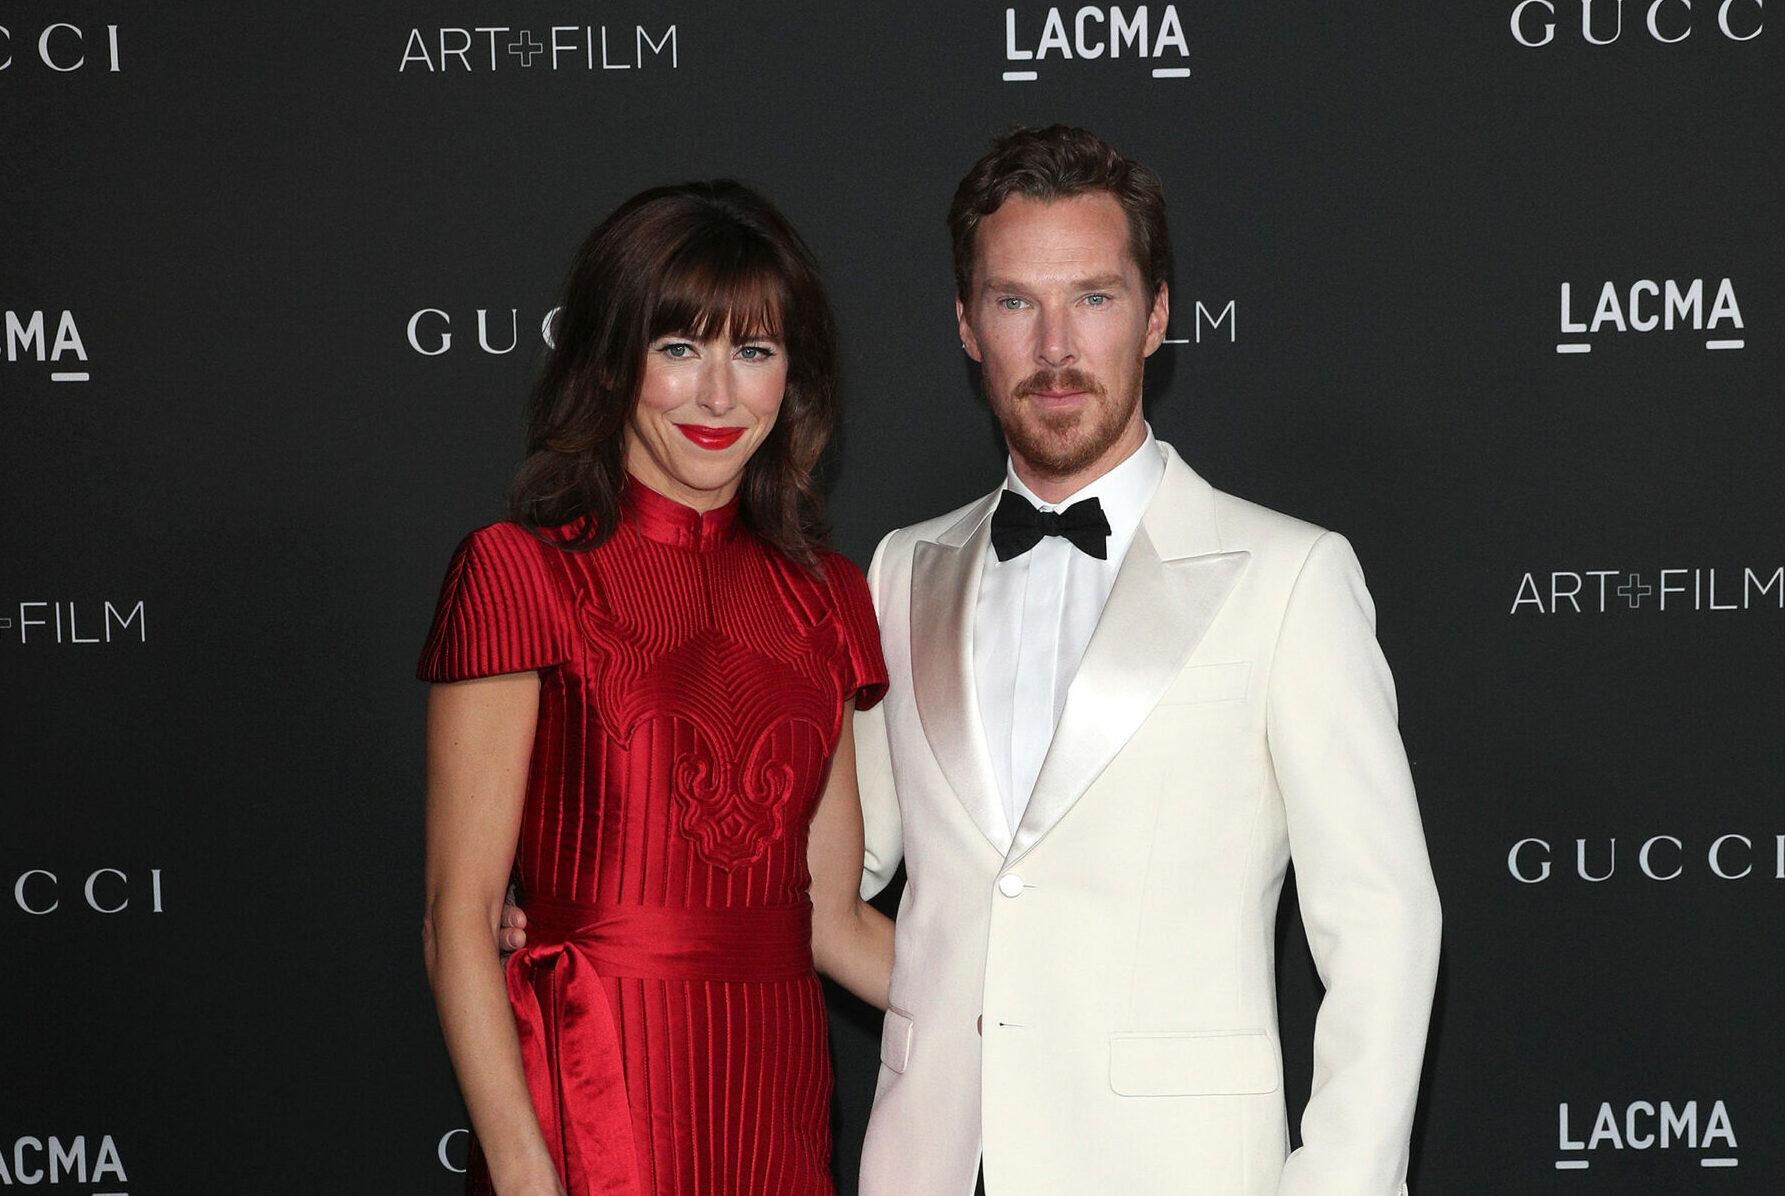 Benedict Cumberbatch at 2021 LACMA ART FILM Gala